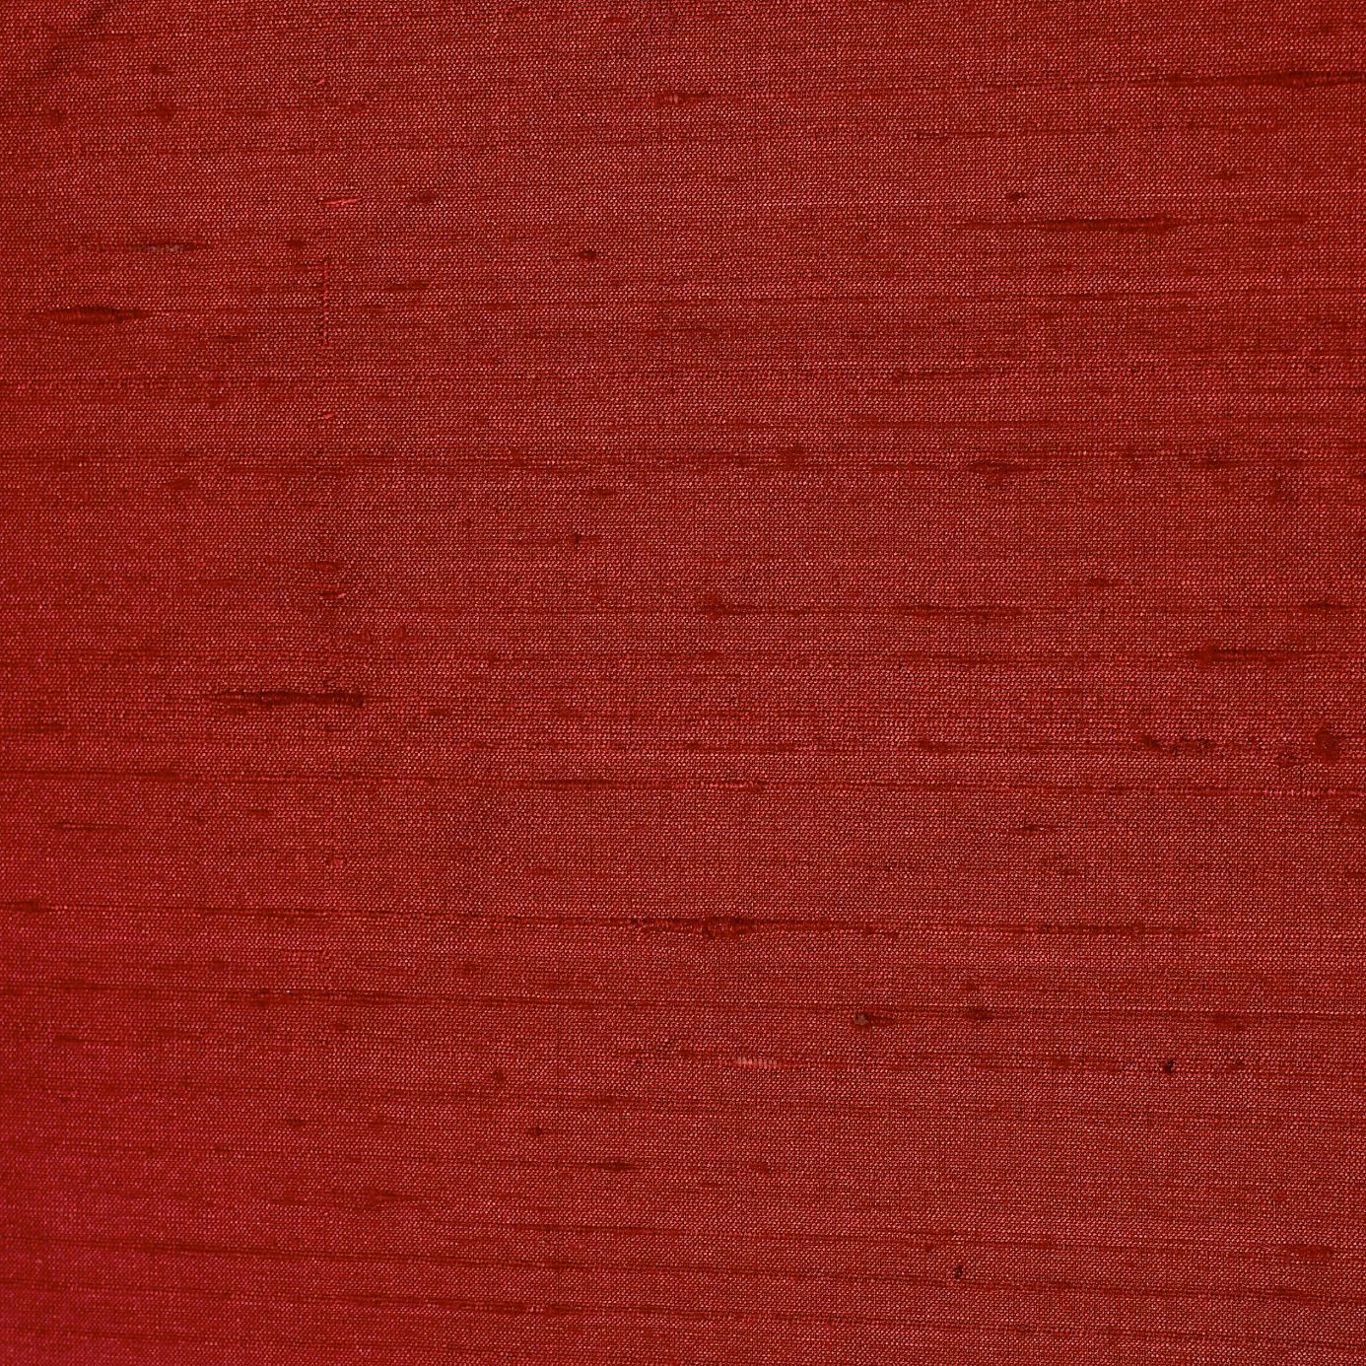 Lilaea Silks Ruby Fabric by HAR